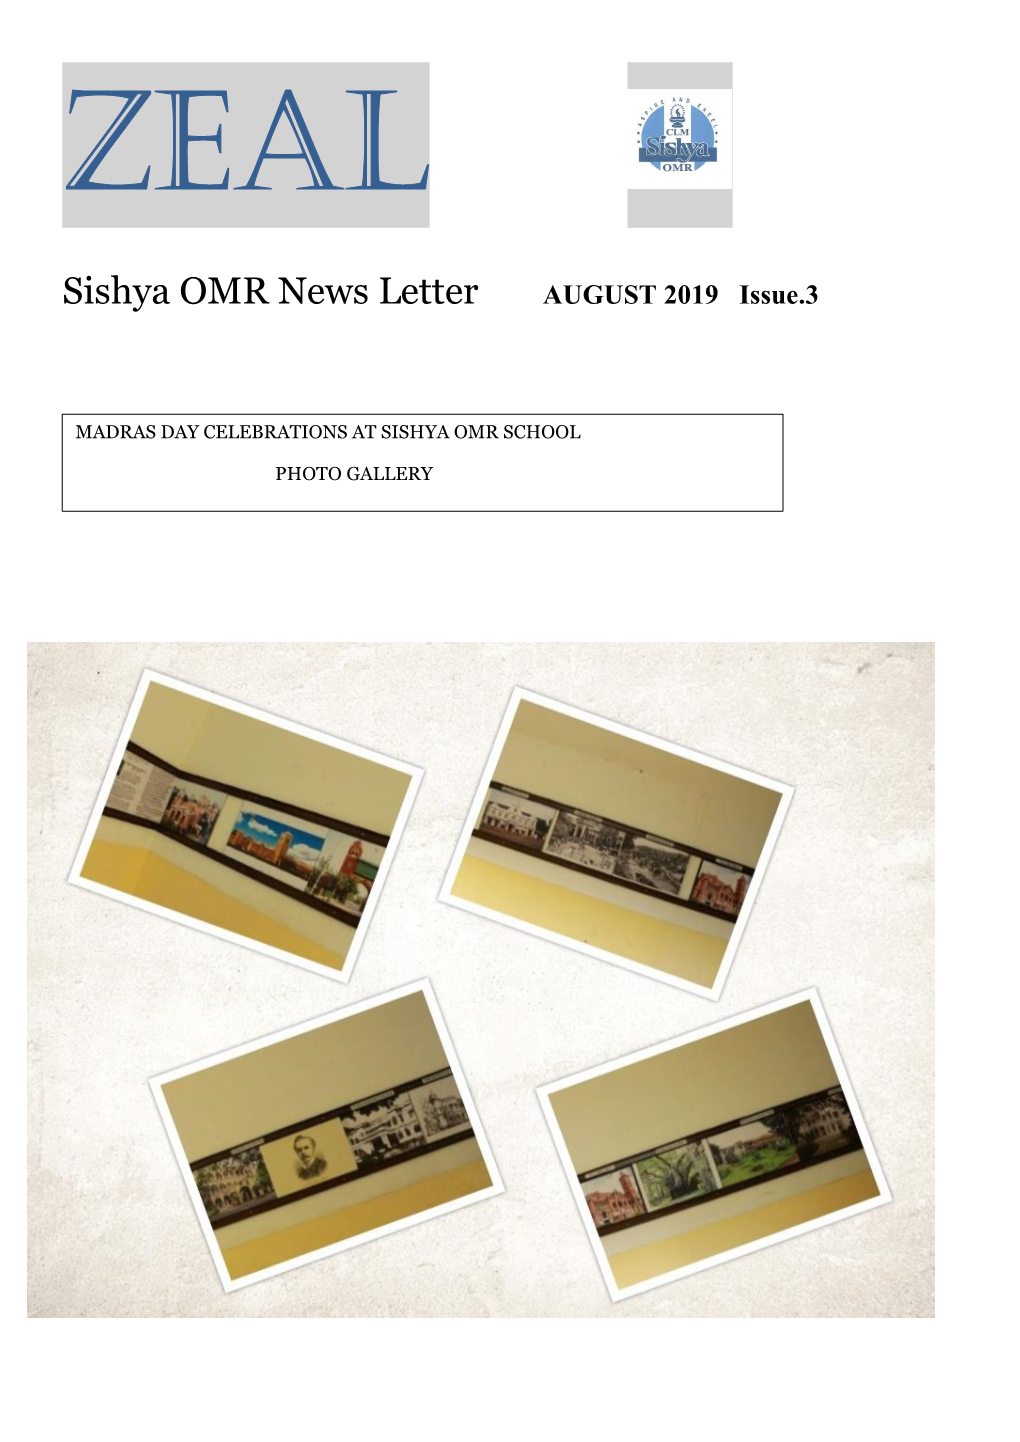 Sishya OMR News Letter AUGUST 2019 Issue.3